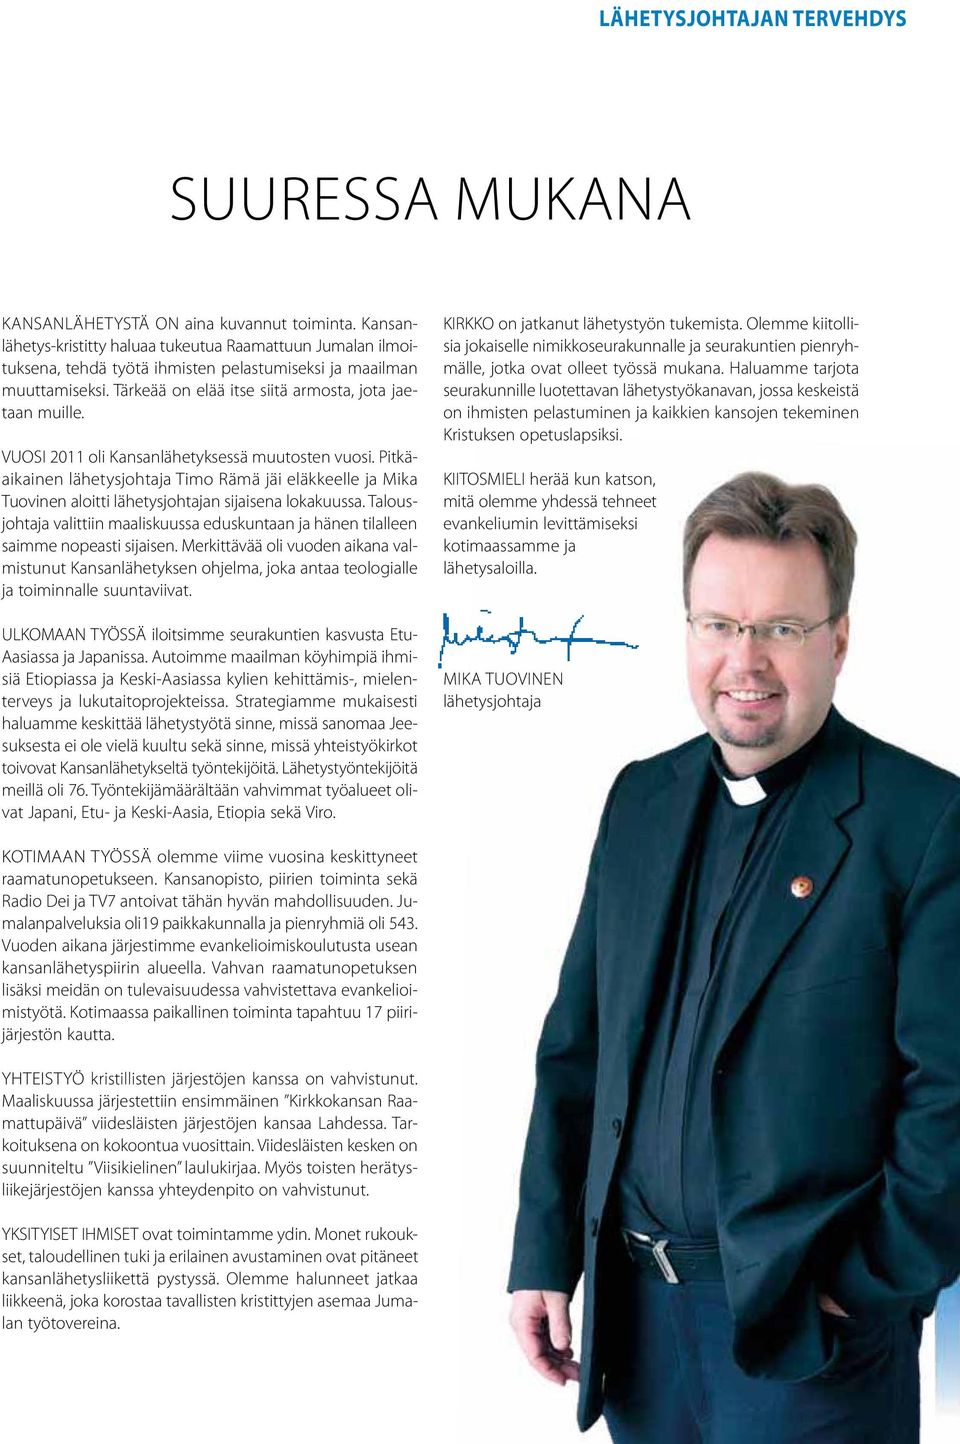 VUOSI 2011 oli Kansanlähetyksessä muutosten vuosi. Pitkäaikainen lähetysjohtaja Timo Rämä jäi eläkkeelle ja Mika Tuovinen aloitti lähetysjohtajan sijaisena lokakuussa.